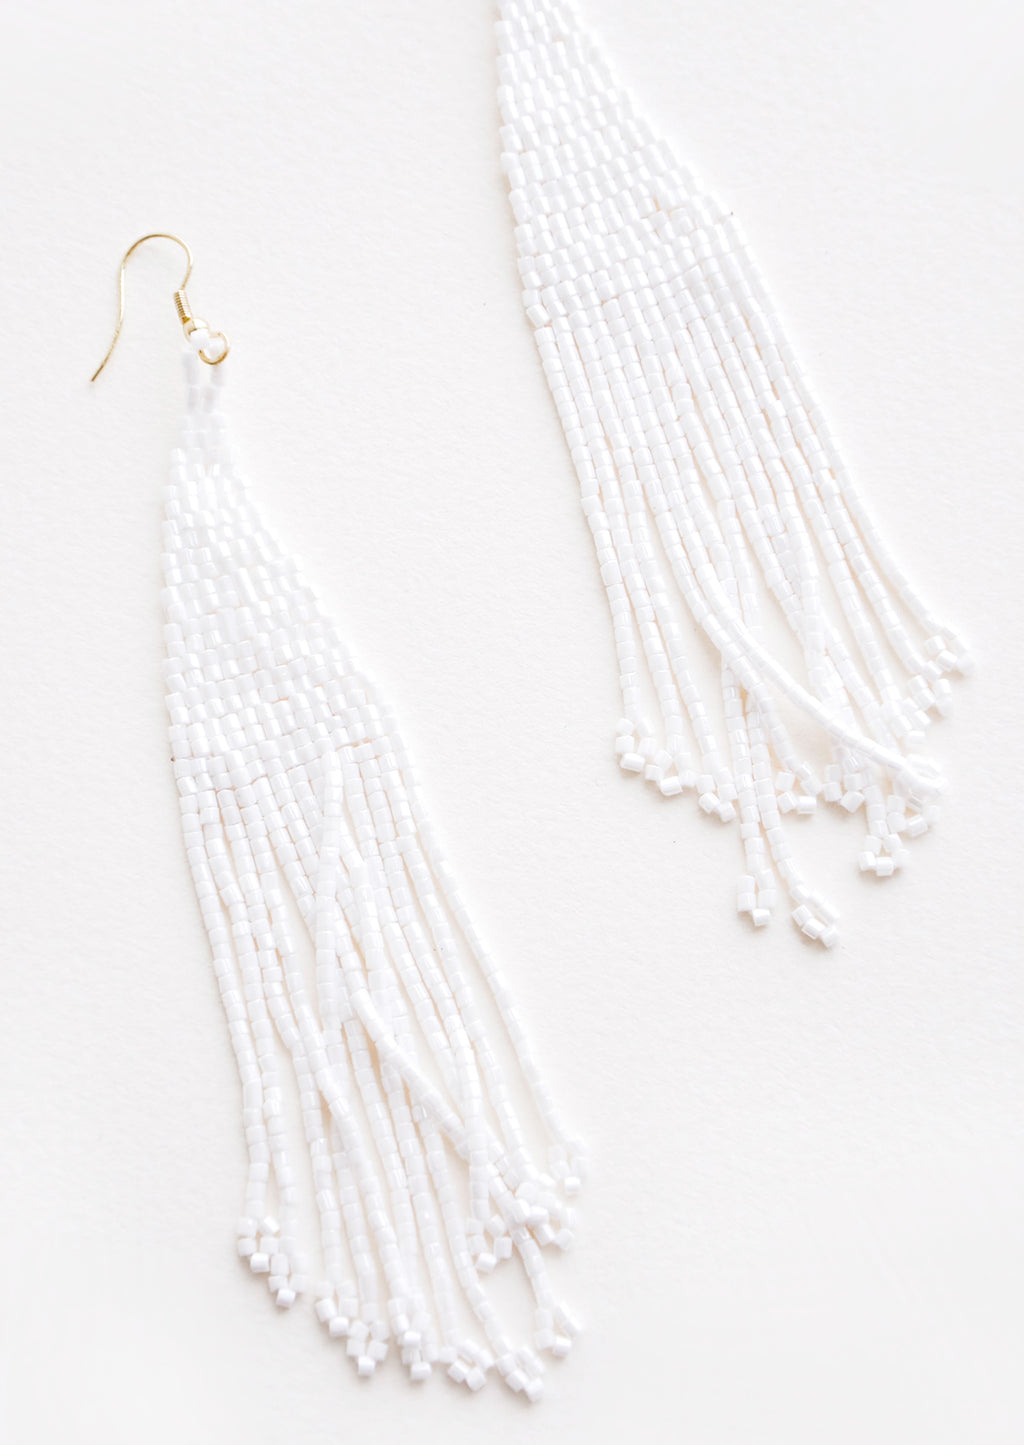 Iridescent White: True white iridescent beaded fringe earrings. 